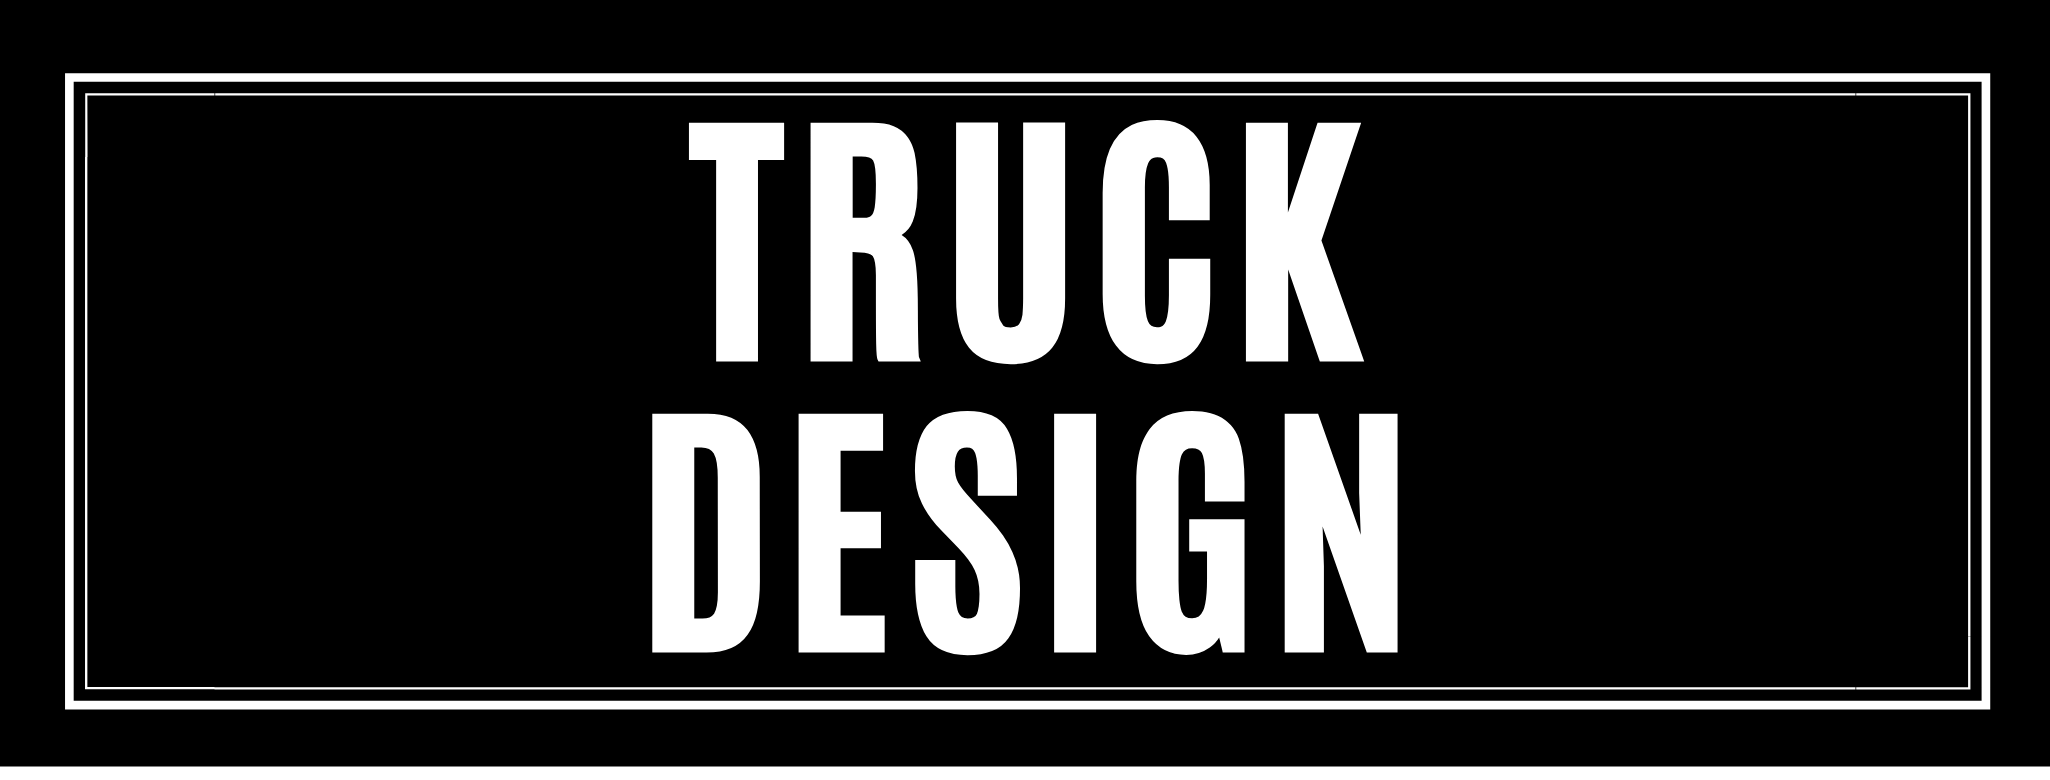 Truck design stickers